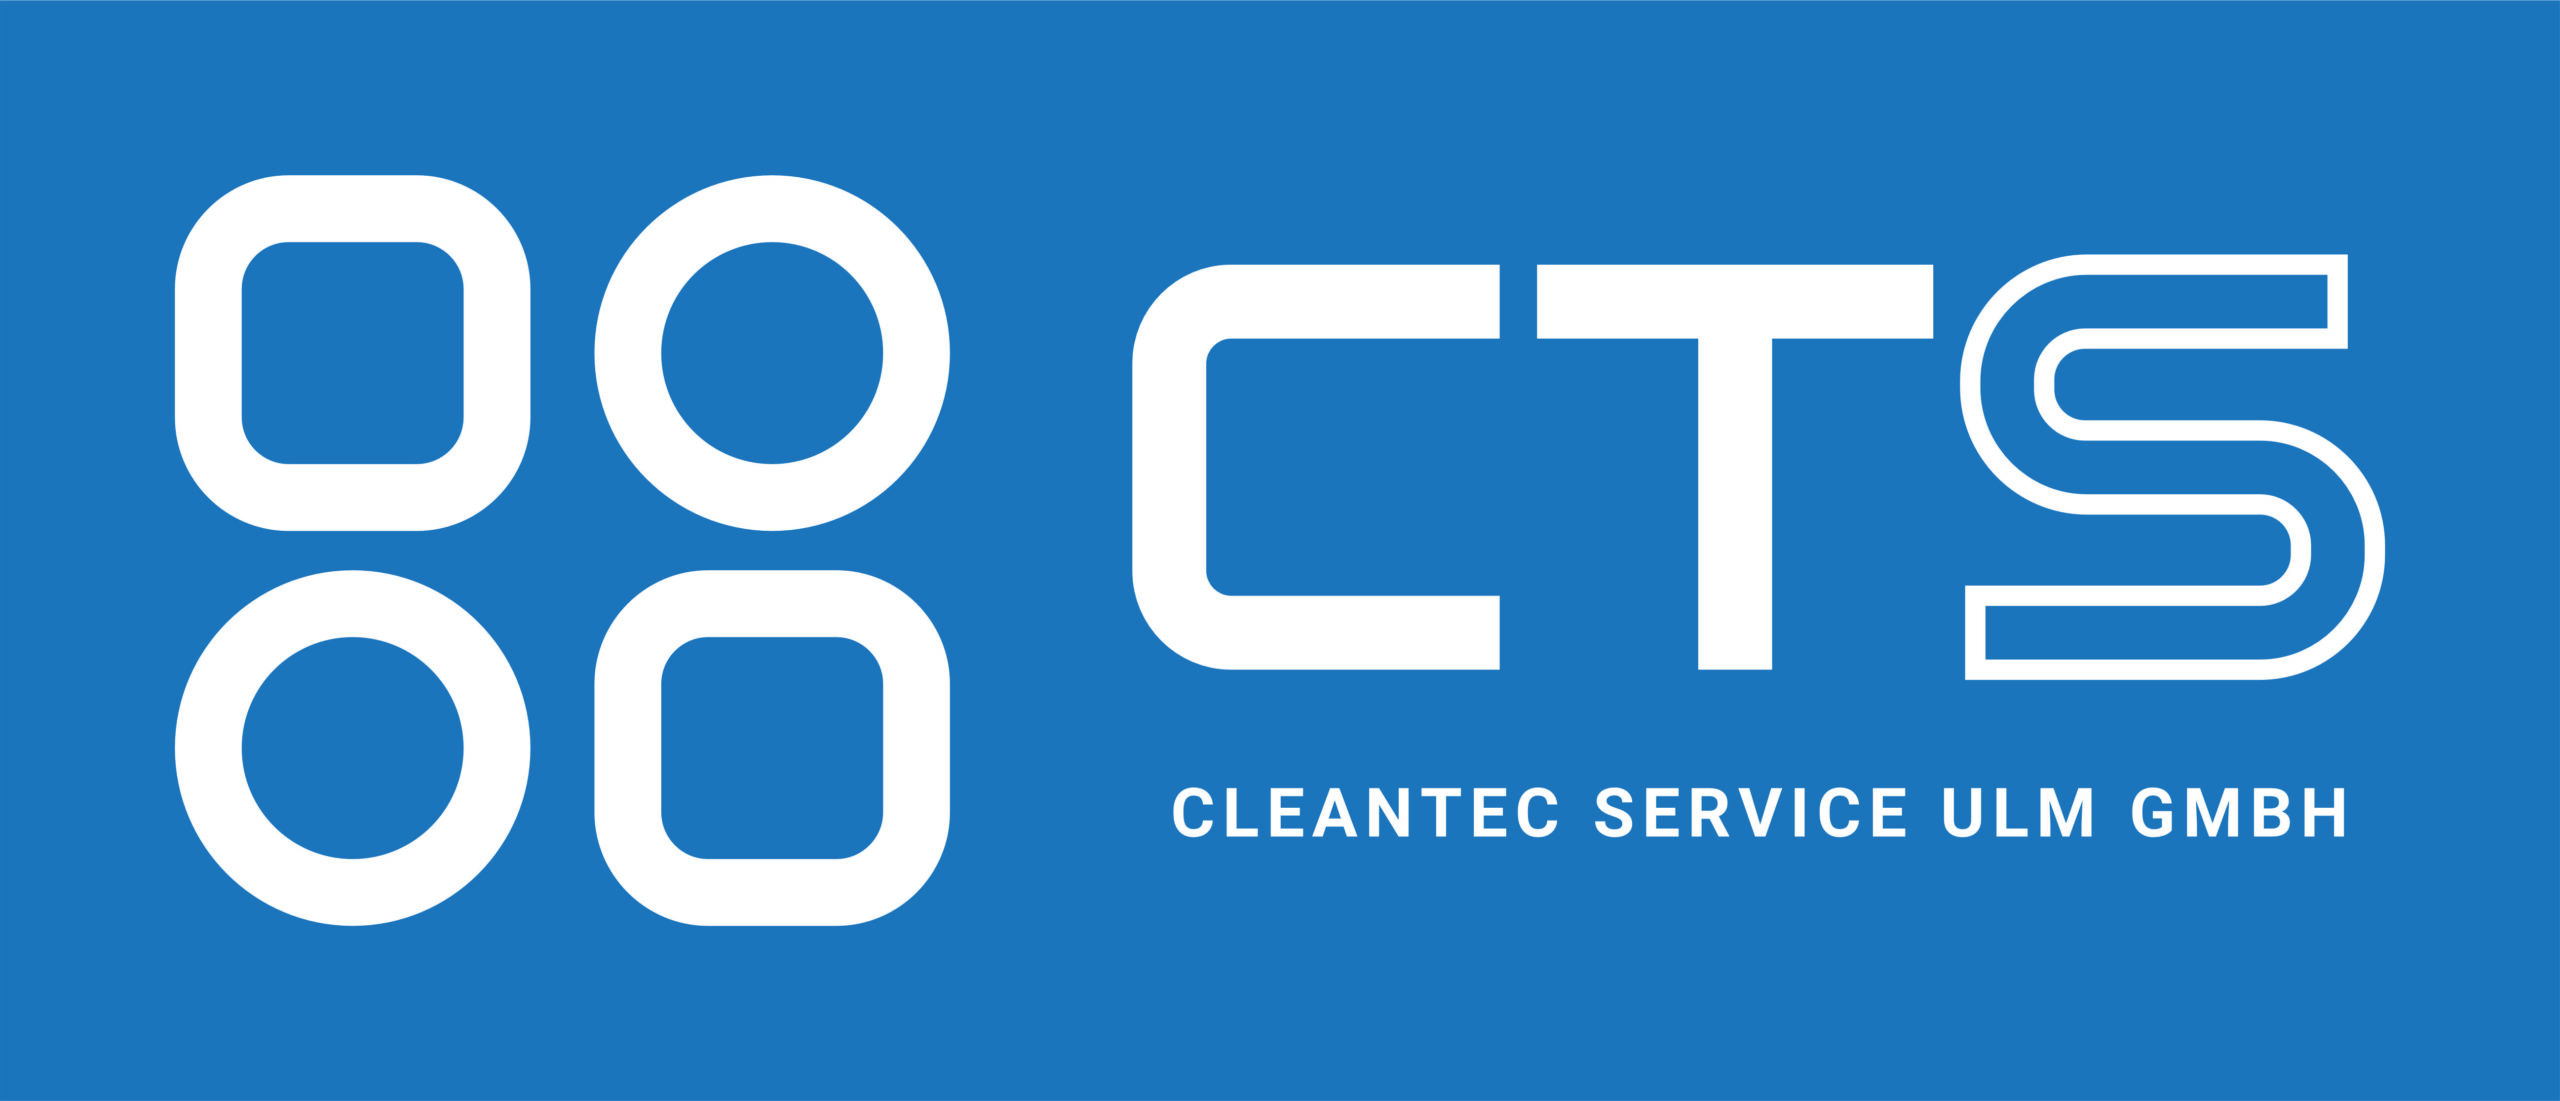 Clean Tec Service Ulm GmbH – Ihre Reinigungsfirma in Ulm und um Ulm herum